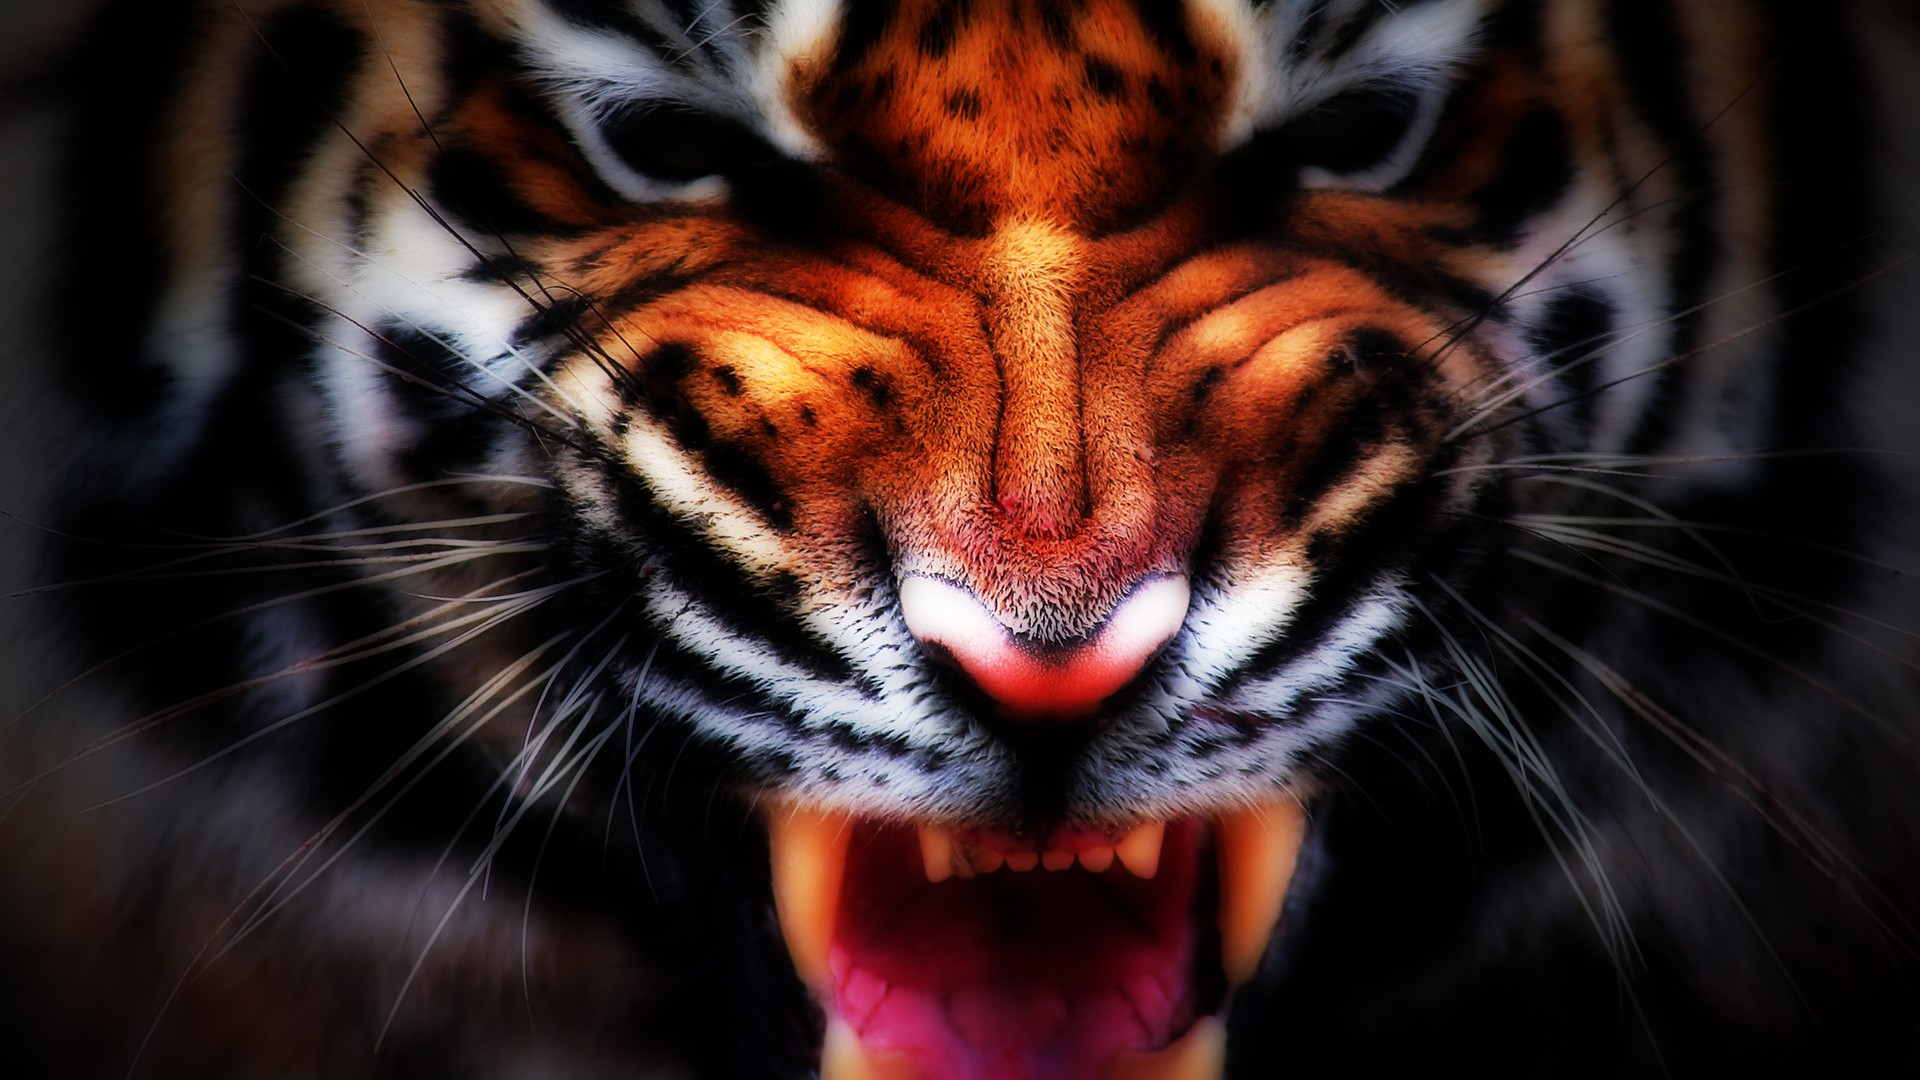 General 1920x1080 nature animals tiger digital art big cats mammals closeup